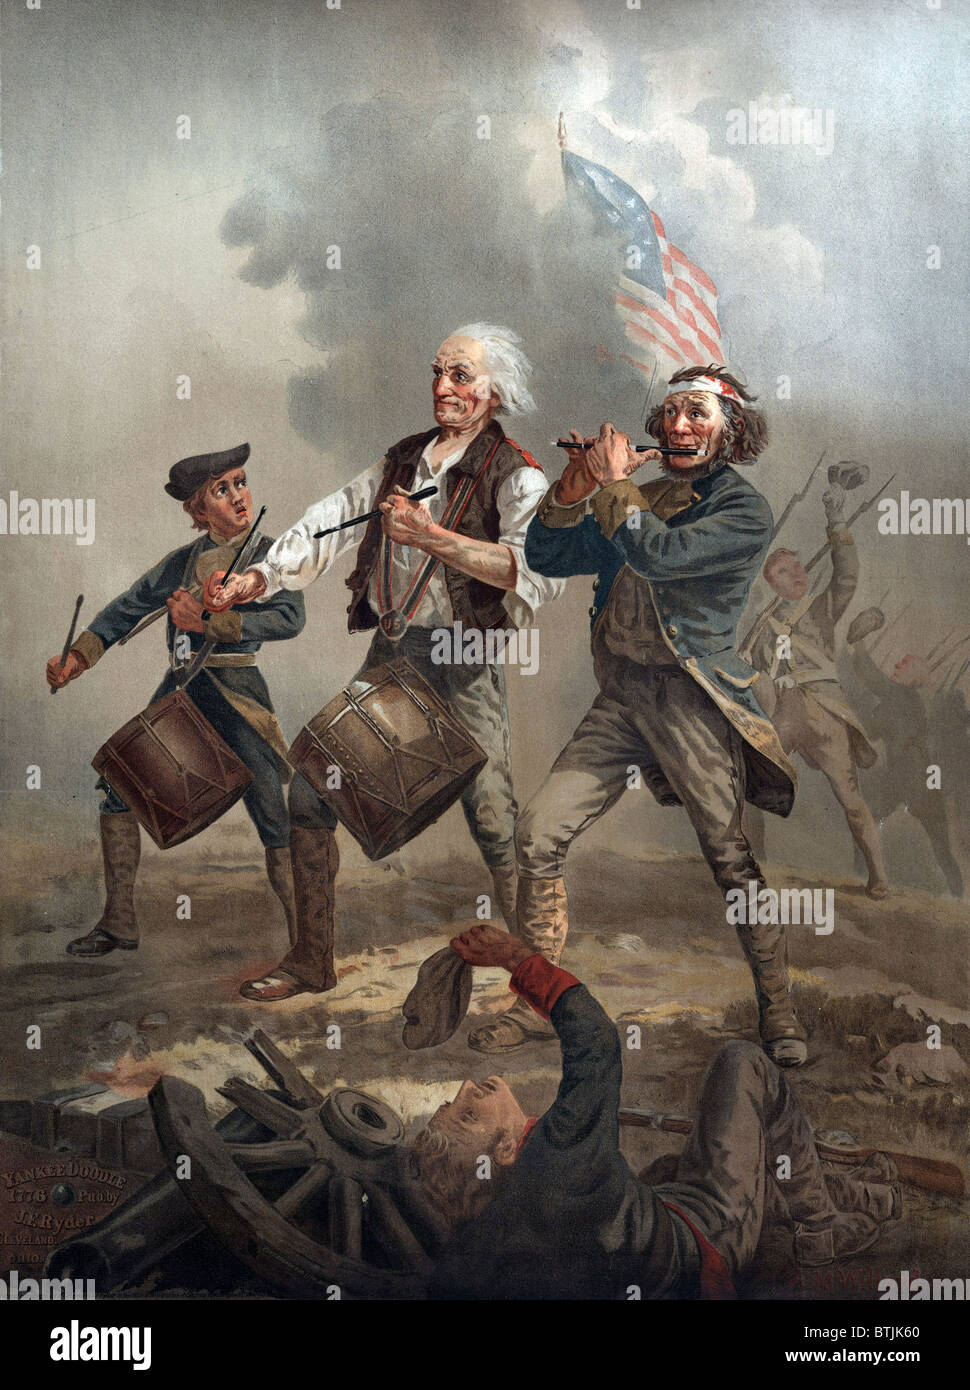 La Rivoluzione Americana, Yankee Doodle 1776, tre patrioti, due suonando la batteria e una riproduzione di un leader di fife truppe in battaglia, da Archibald M. Willard, circa 1876. Foto Stock